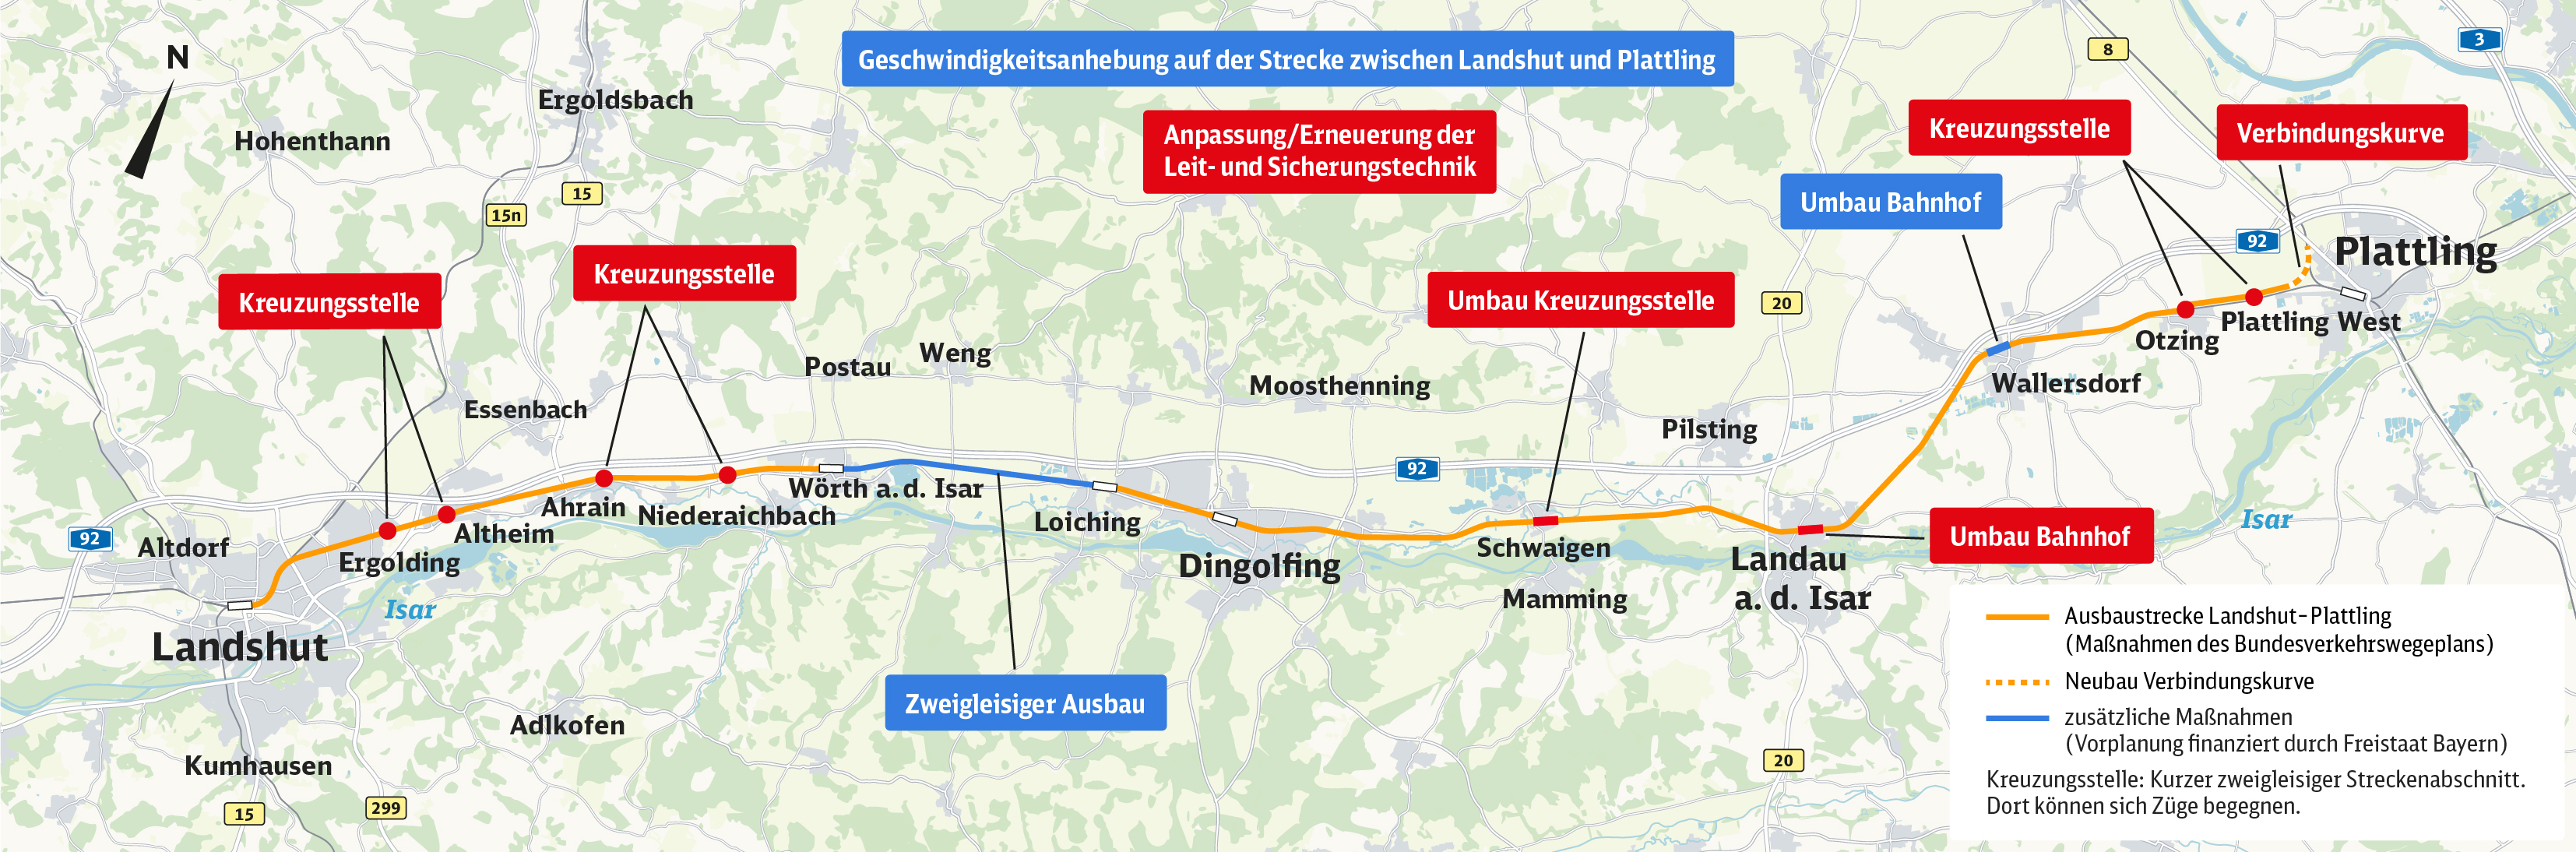 Karte "Geschwindigkeitsanhebung auf der Strecke zwischen Landshut und Plattling" mit markierten Baumaßnahmen